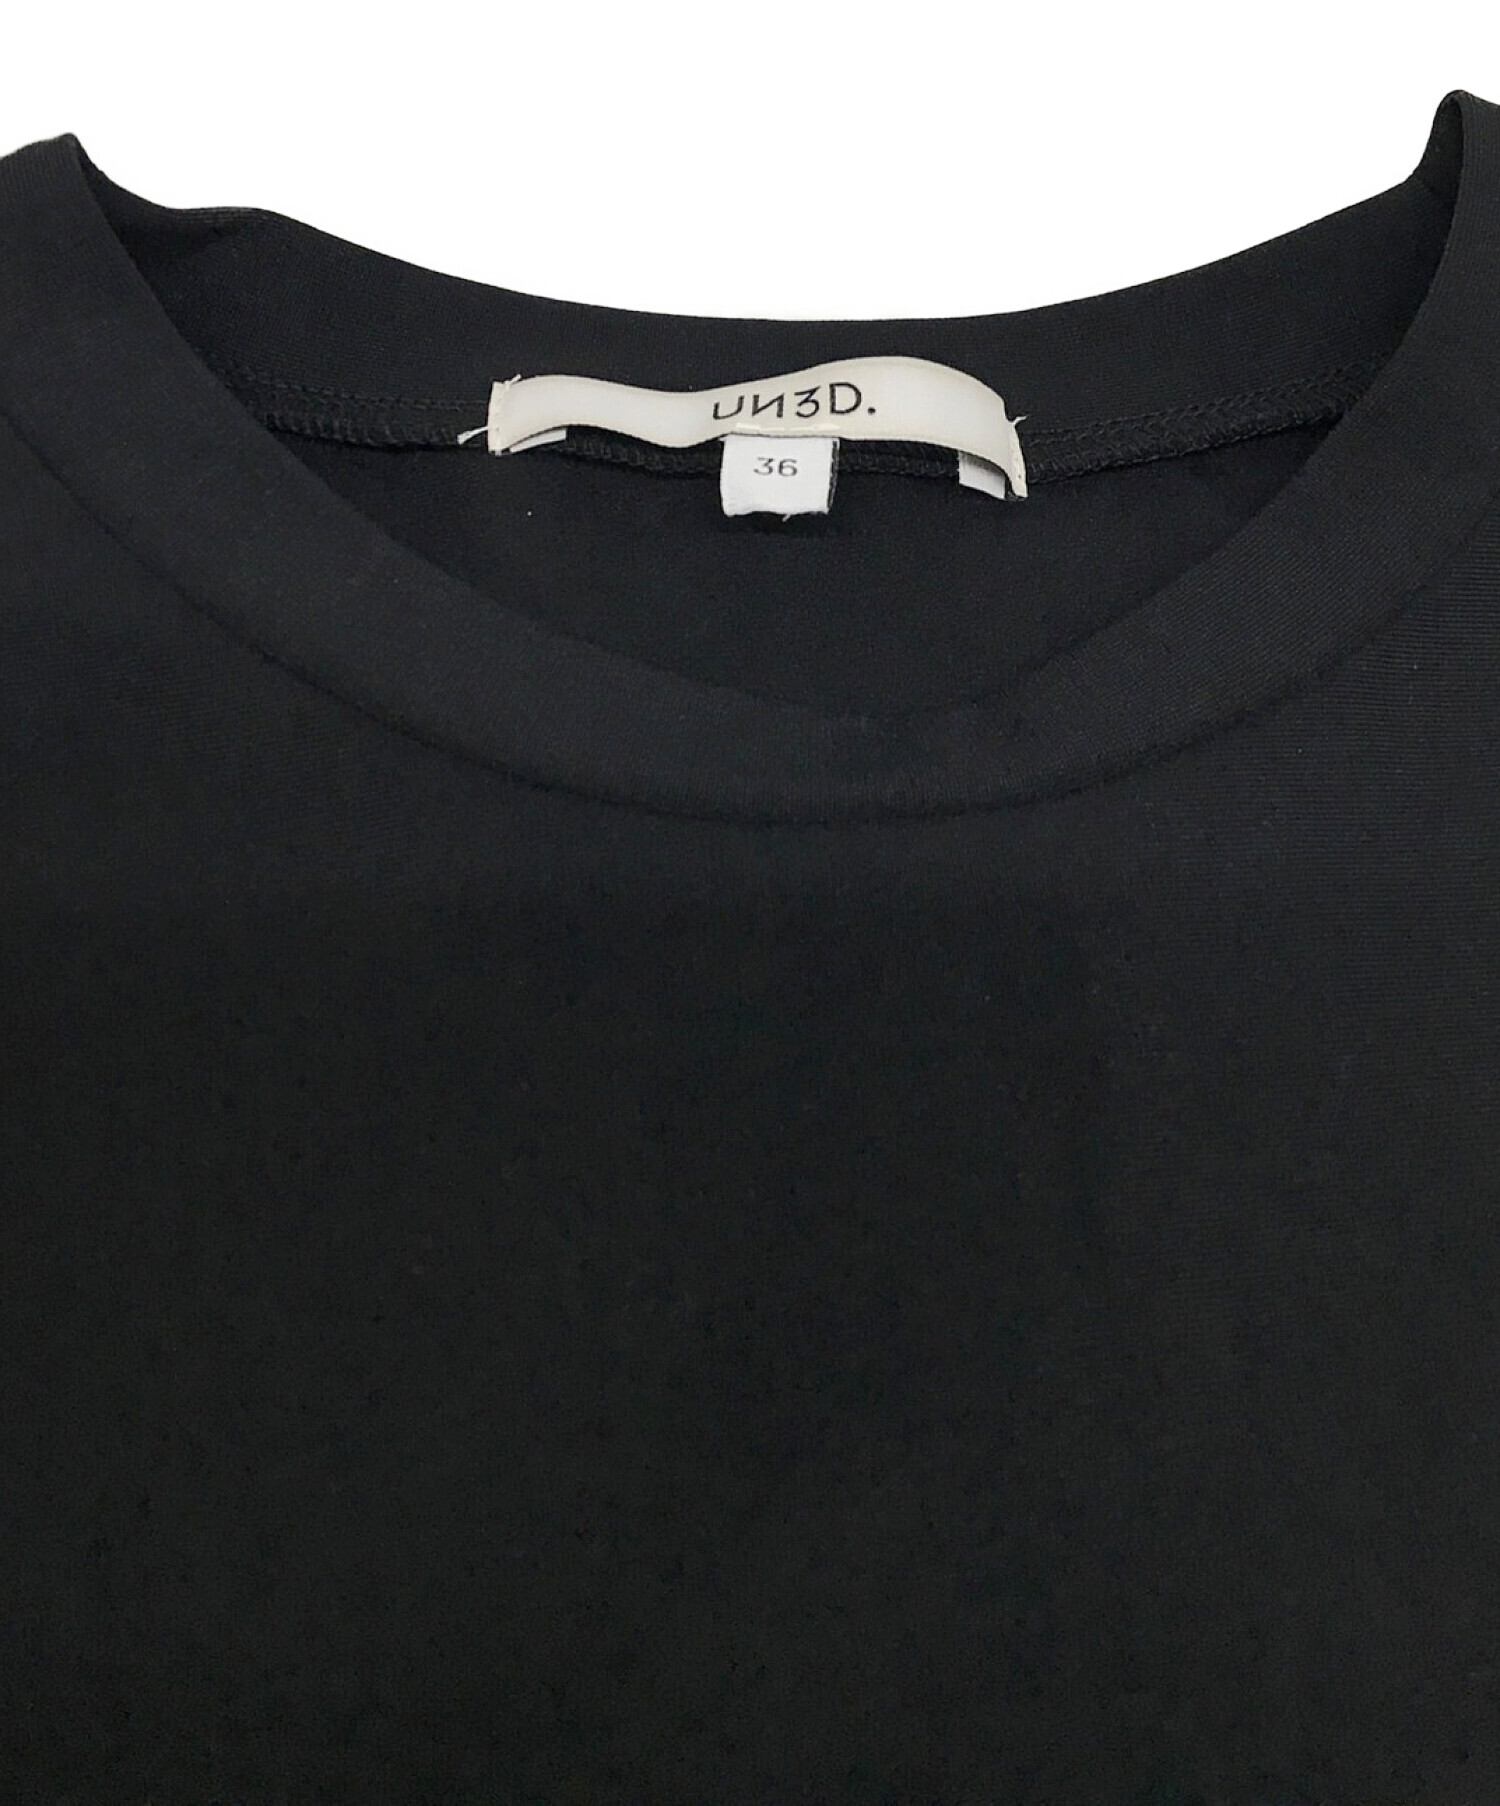 UN3D. (アンスリード) ウェーブラインティーシャツ ブラック サイズ:36